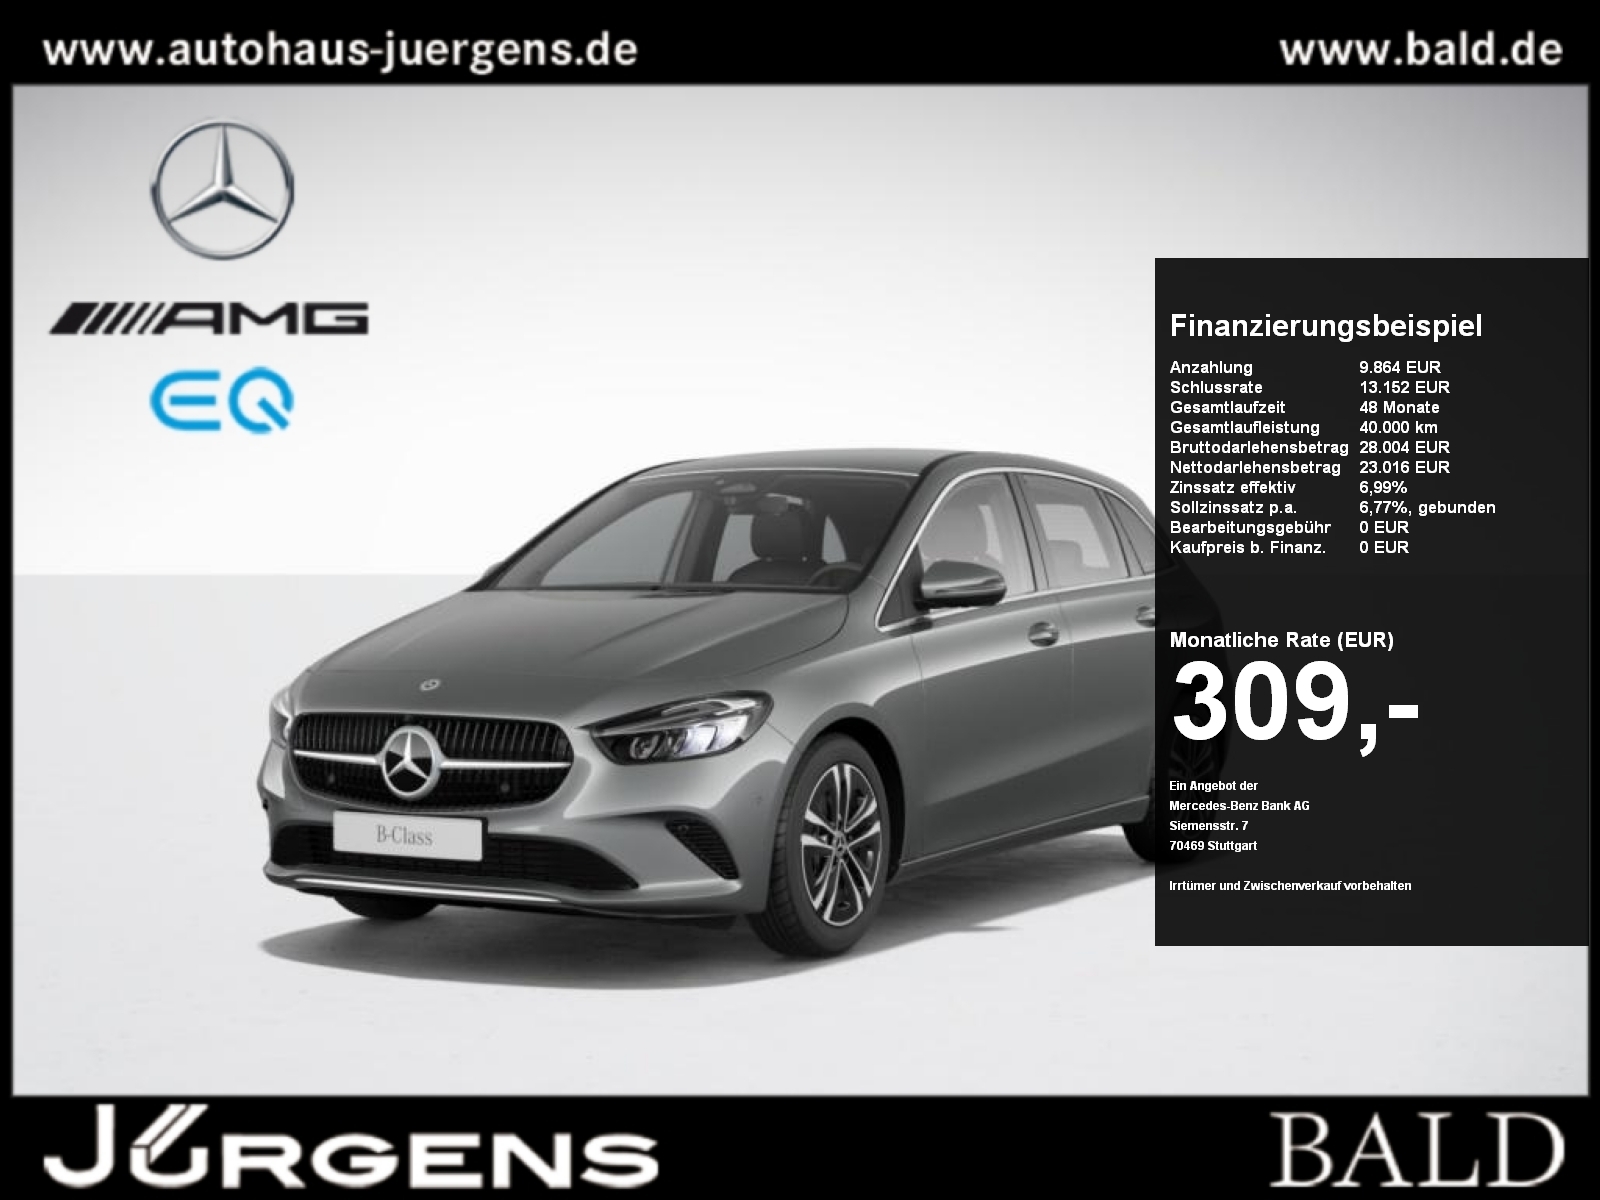 Mercedes-Benz B 180 gebraucht kaufen in Jettingen Württ Preis 9900 eur -  Int.Nr.: 1050 VERKAUFT